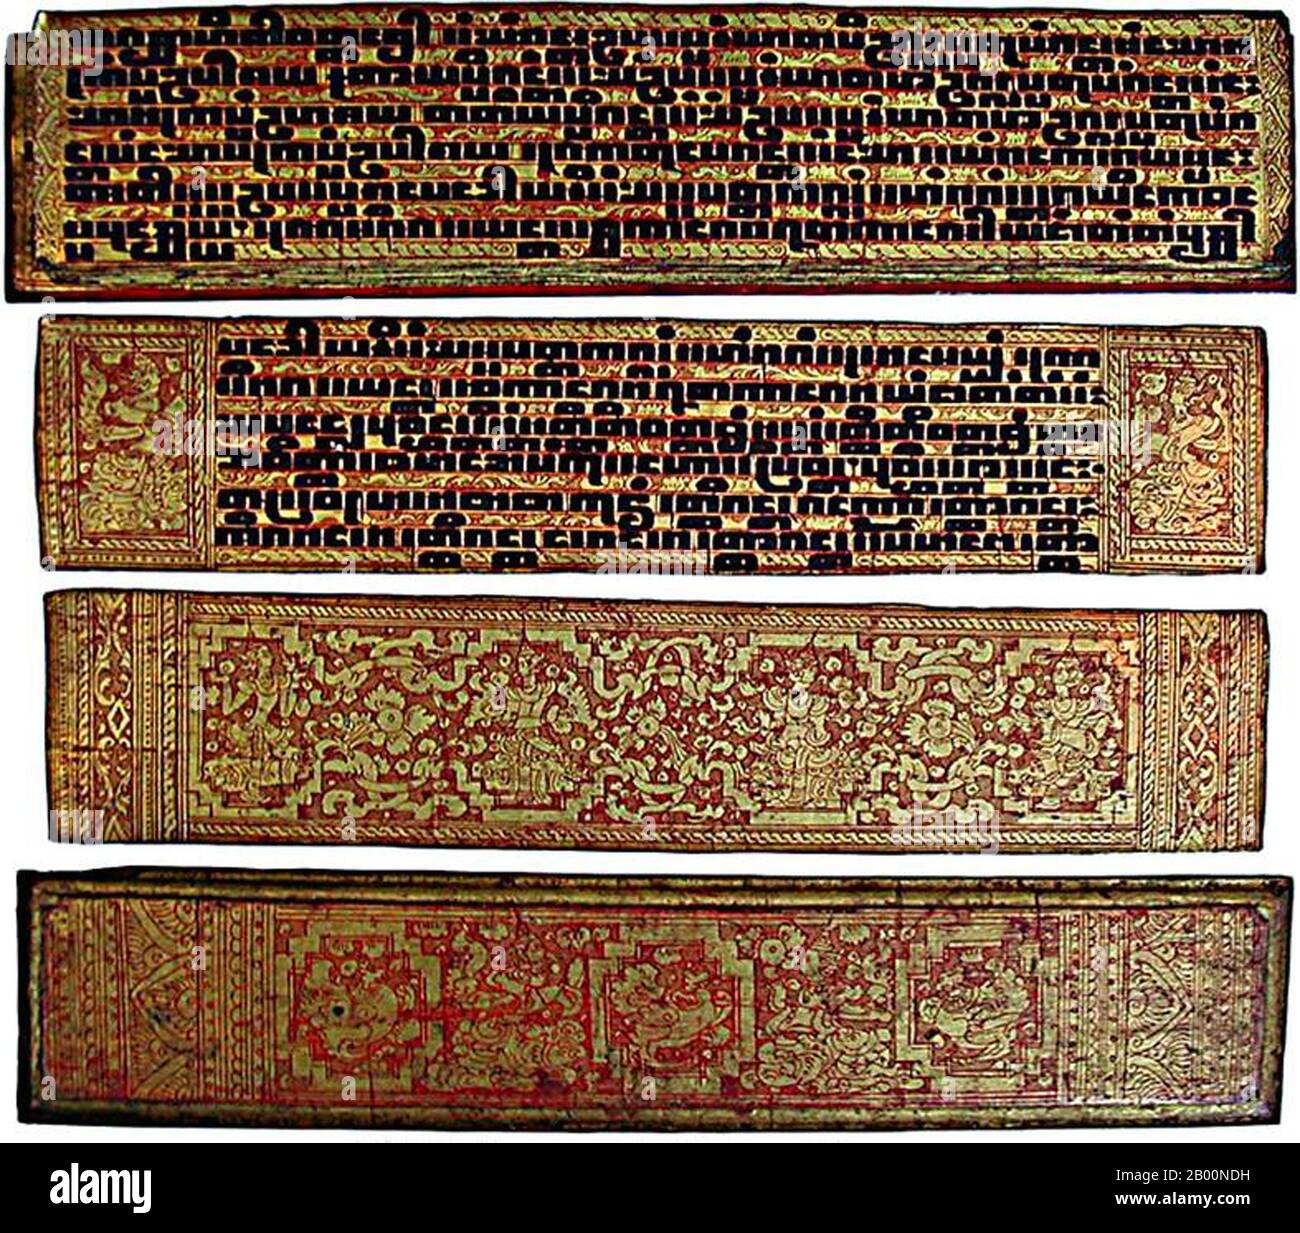 Myanmar / Burma: Pali-Schrift. Kammavaca in Pali, Burma, 19. Jahrhundert. Pali (auch Pāḷi) ist eine mittelindisch-arische Sprache, die in der Prakrit-Sprachgruppe liegt und auf dem indischen Subkontinent heimisch war. Es ist eine tote Sprache, die weithin studiert wird, weil es die Sprache vieler der frühesten erhaltenen buddhistischen Schriften ist, wie sie im Pāḷi-Kanon oder Tipitaka gesammelt wurden, Und es ist die liturgische Sprache des Theravada Buddhismus, wie sie in Myanmar / Burma, Thailand, Laos, Kambodscha und Sri Lanka praktiziert wird. Stockfoto